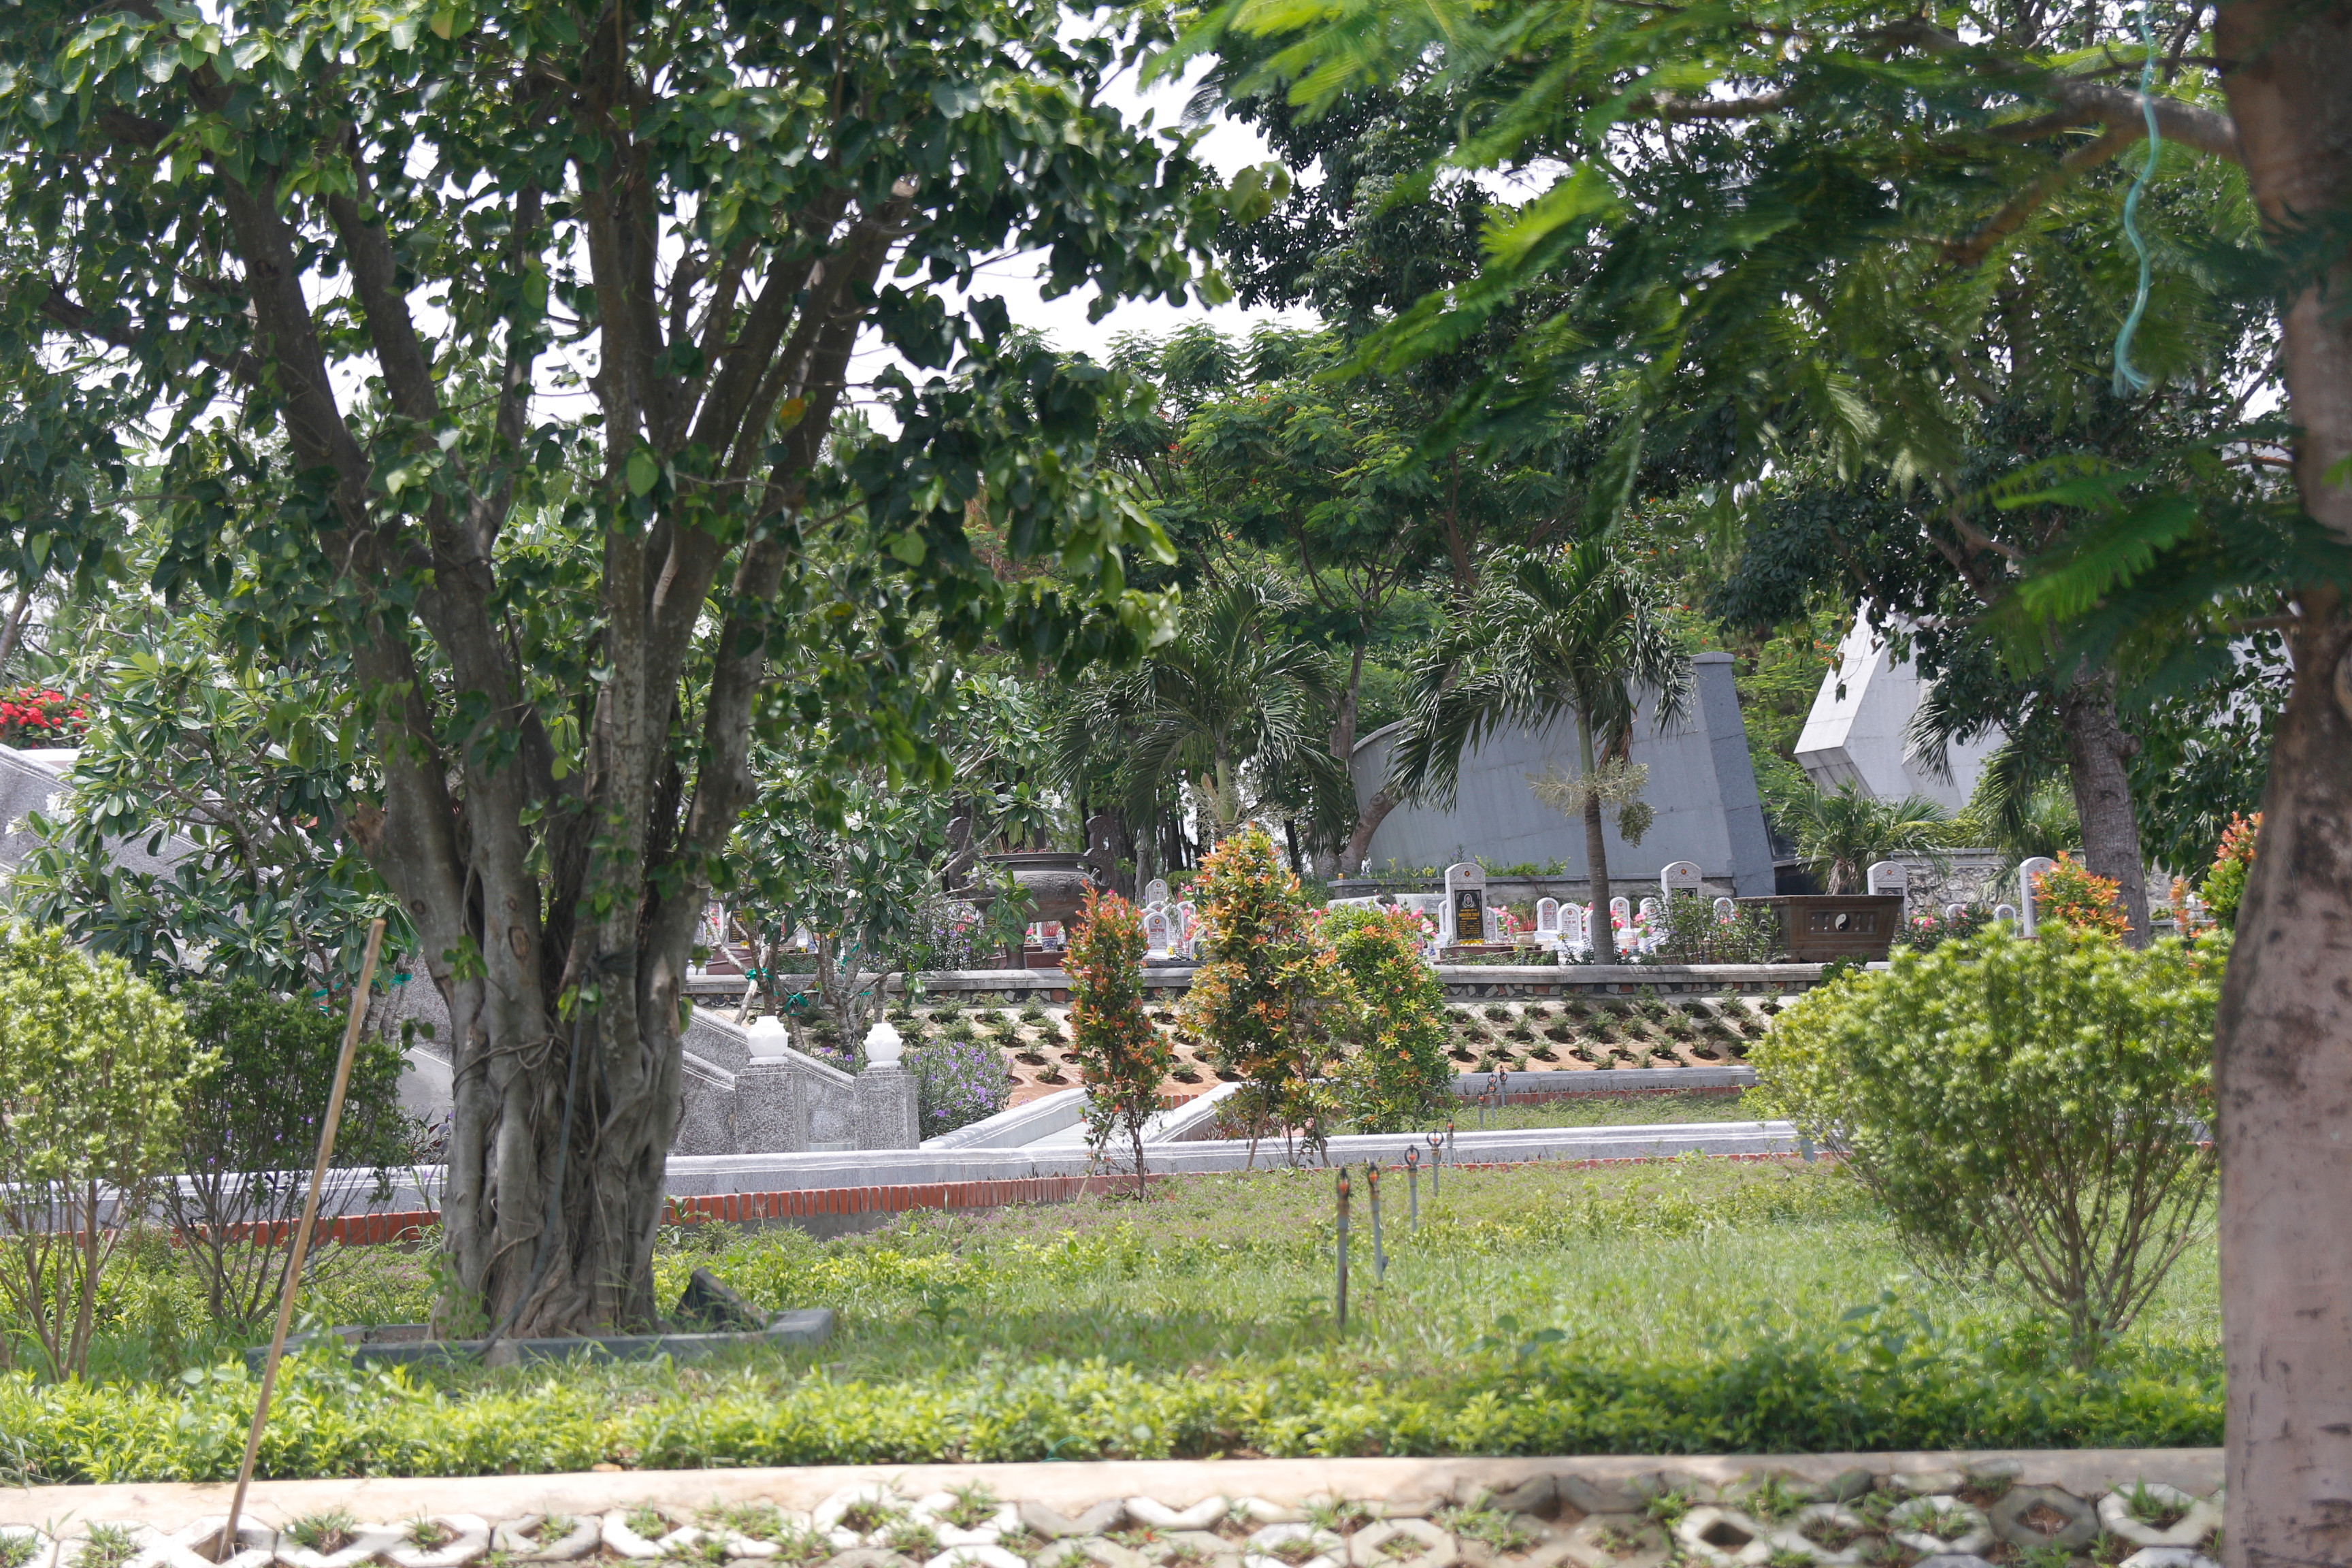 Tại Quảng Trị có đến 72 nghĩa trang liệt sỹ, trong đó Nghĩa trang liệt sỹ quốc gia Trường Sơn và Nghĩa trang liệt sỹ quốc gia Đường 9 là 2 nghĩa trang lớn nhất. Ảnh: Phương Anh